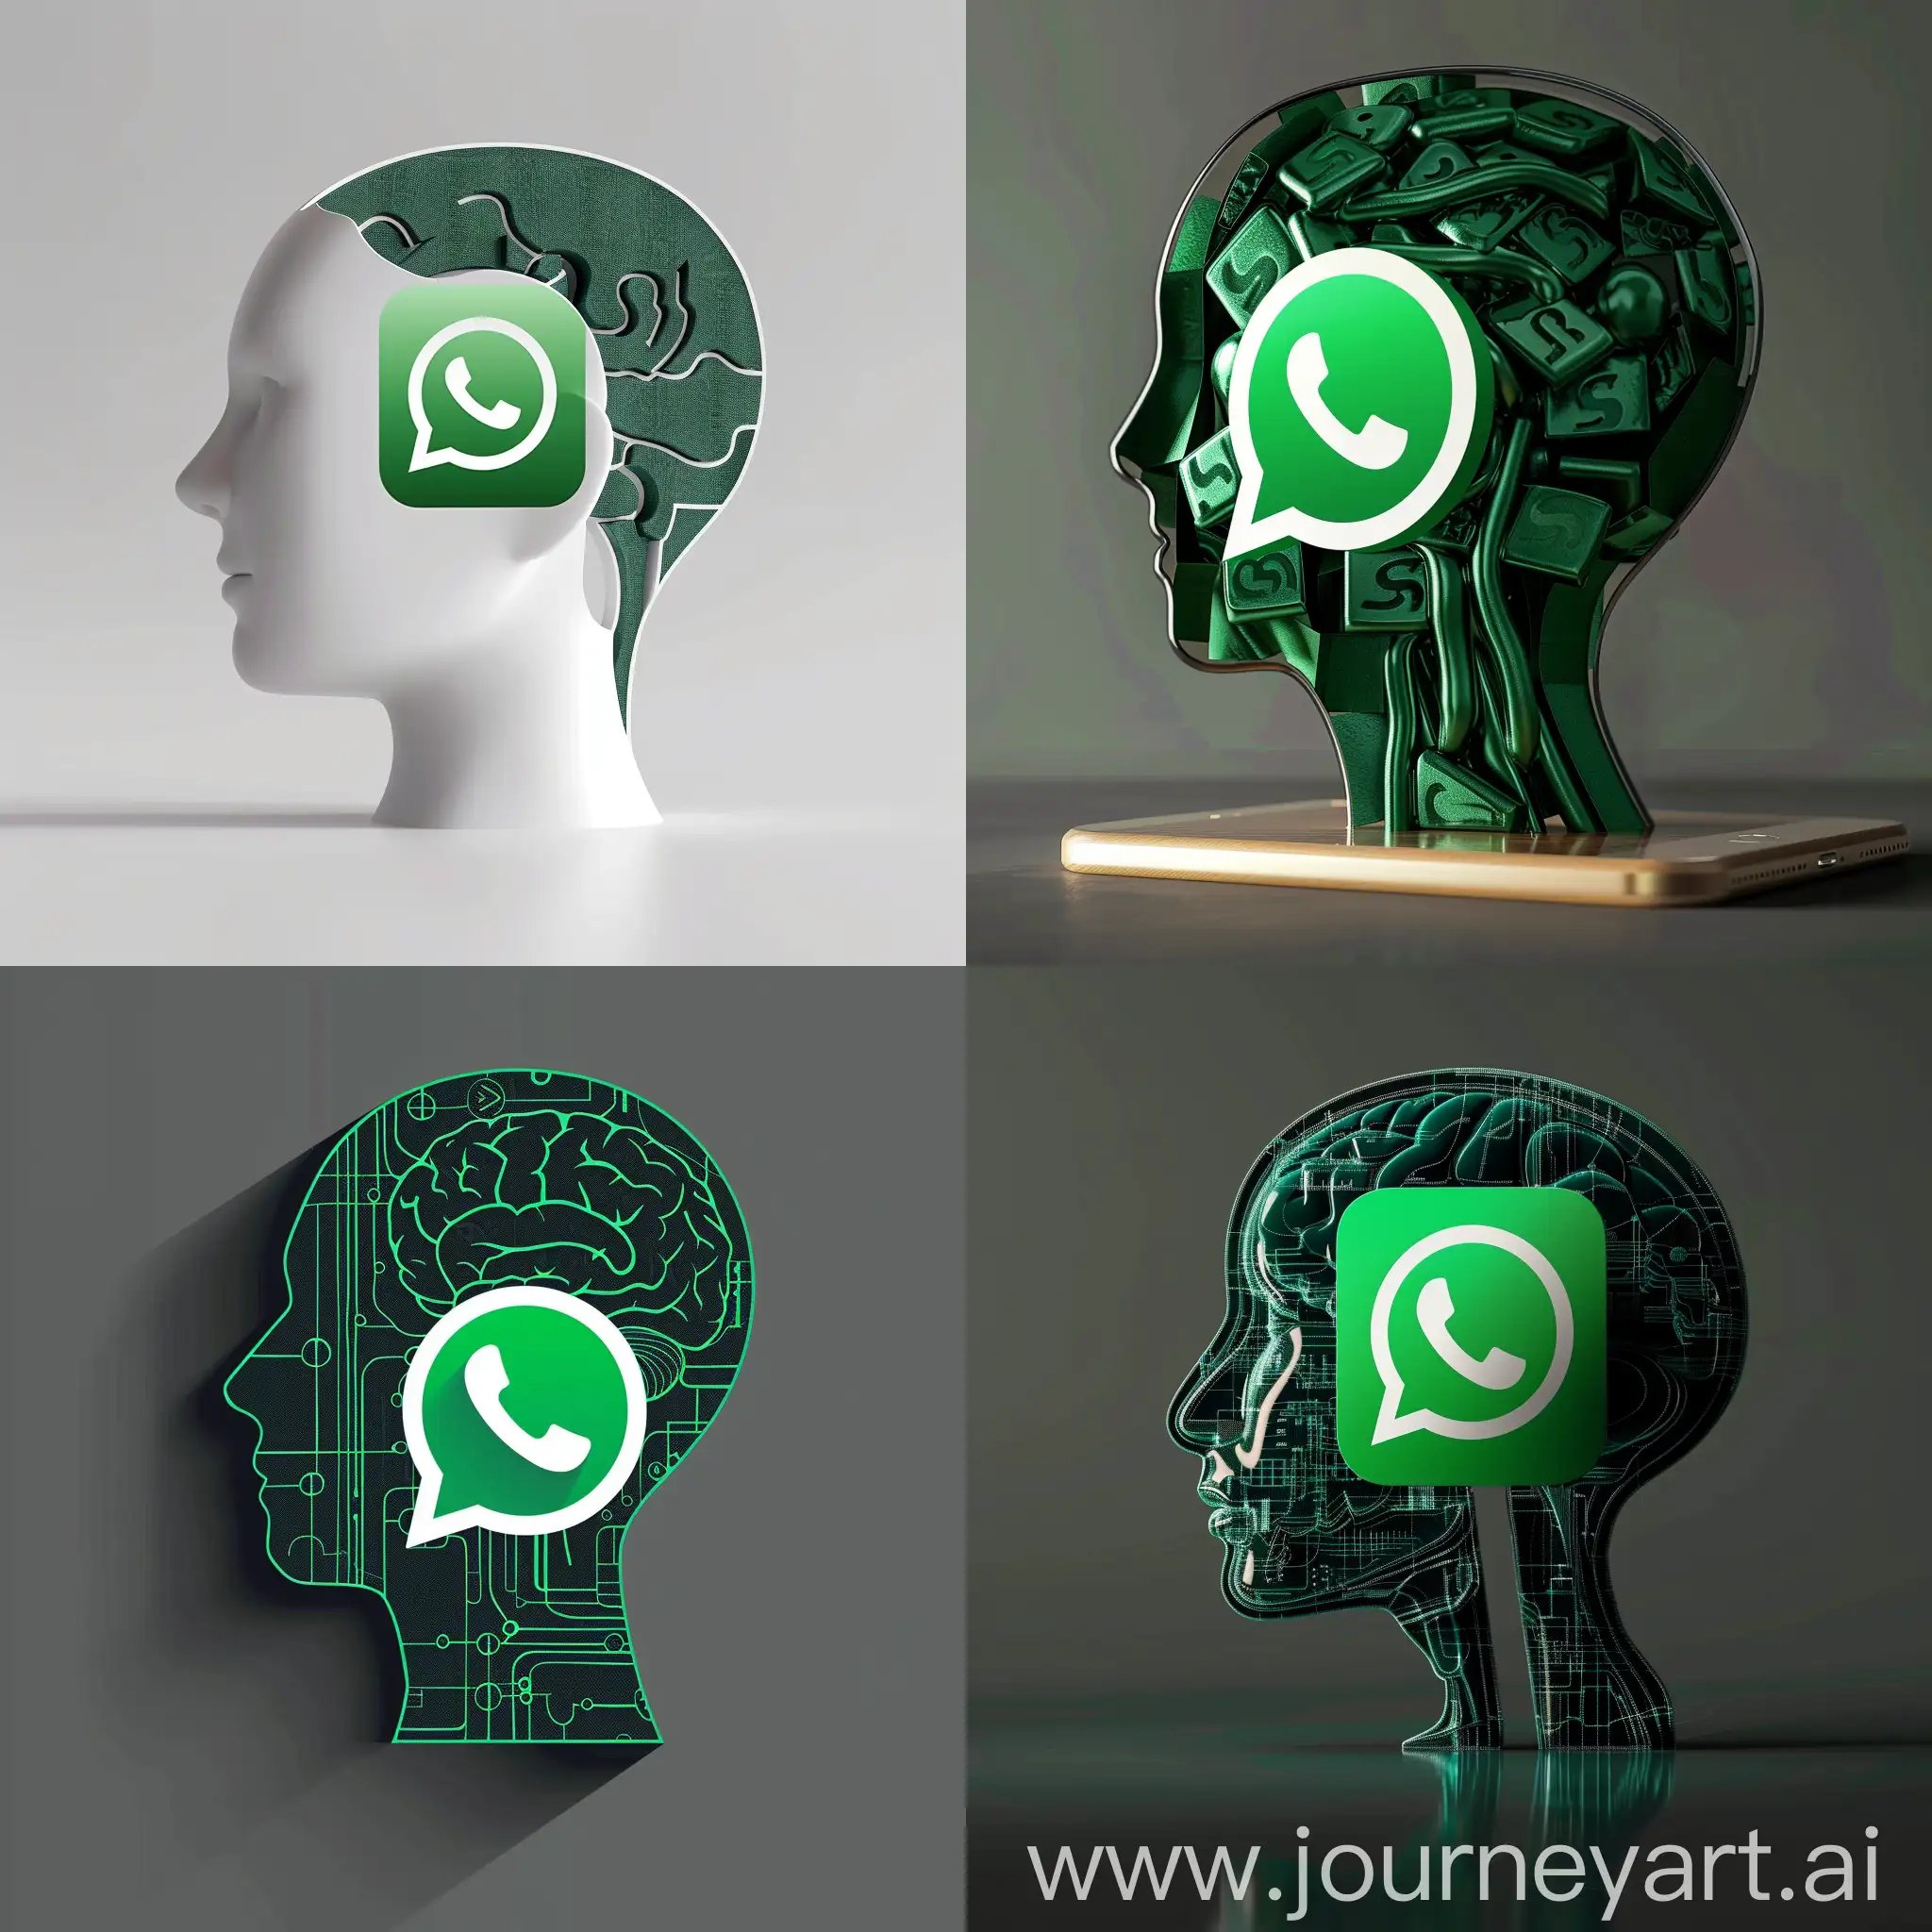 whatsapp logo as a humen head